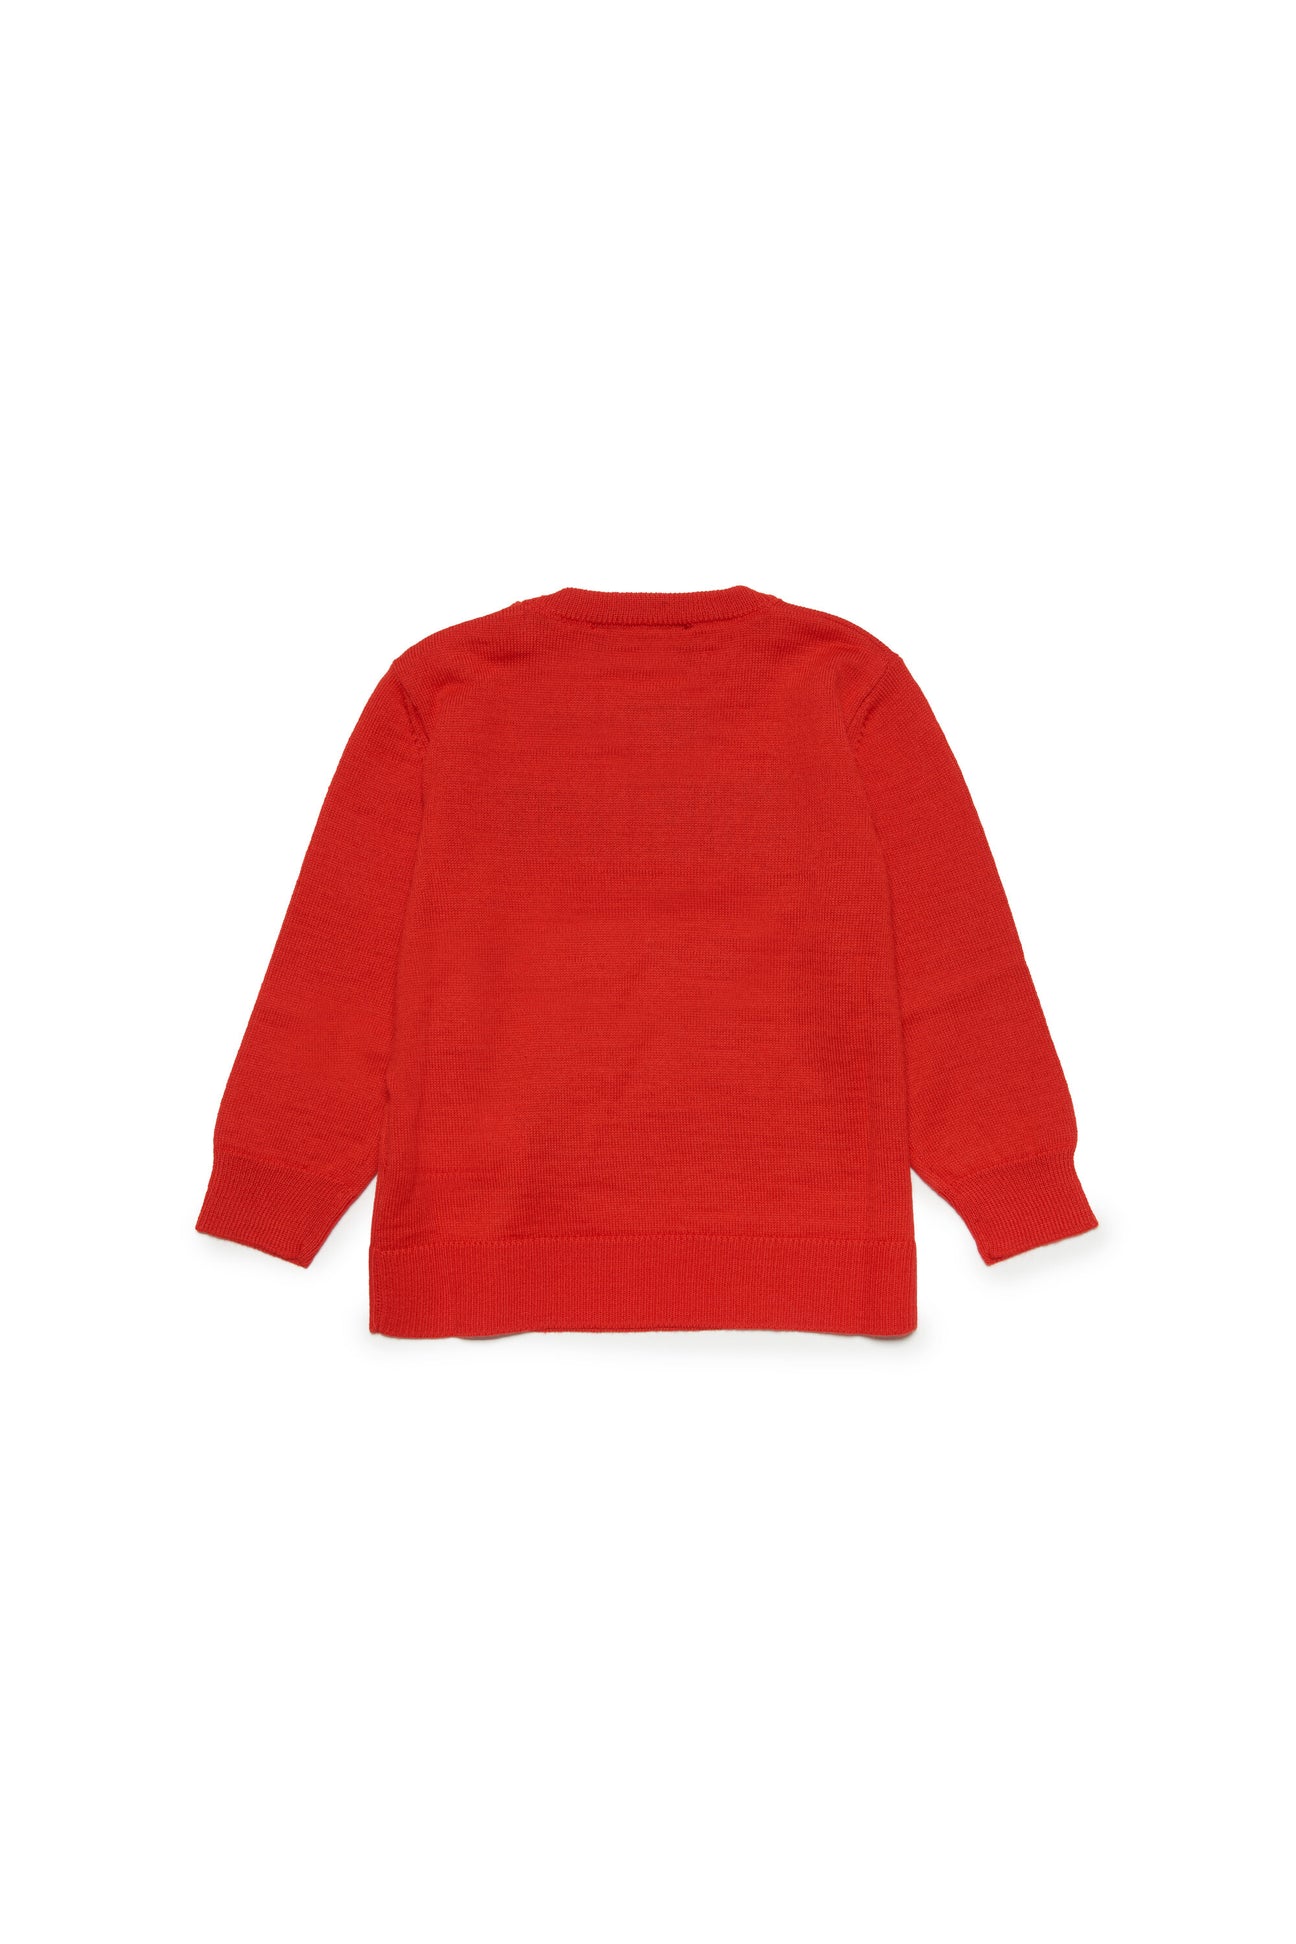 Jersey de cuello redondo en mezcla de lana con logotipo Jersey de cuello redondo en mezcla de lana con logotipo